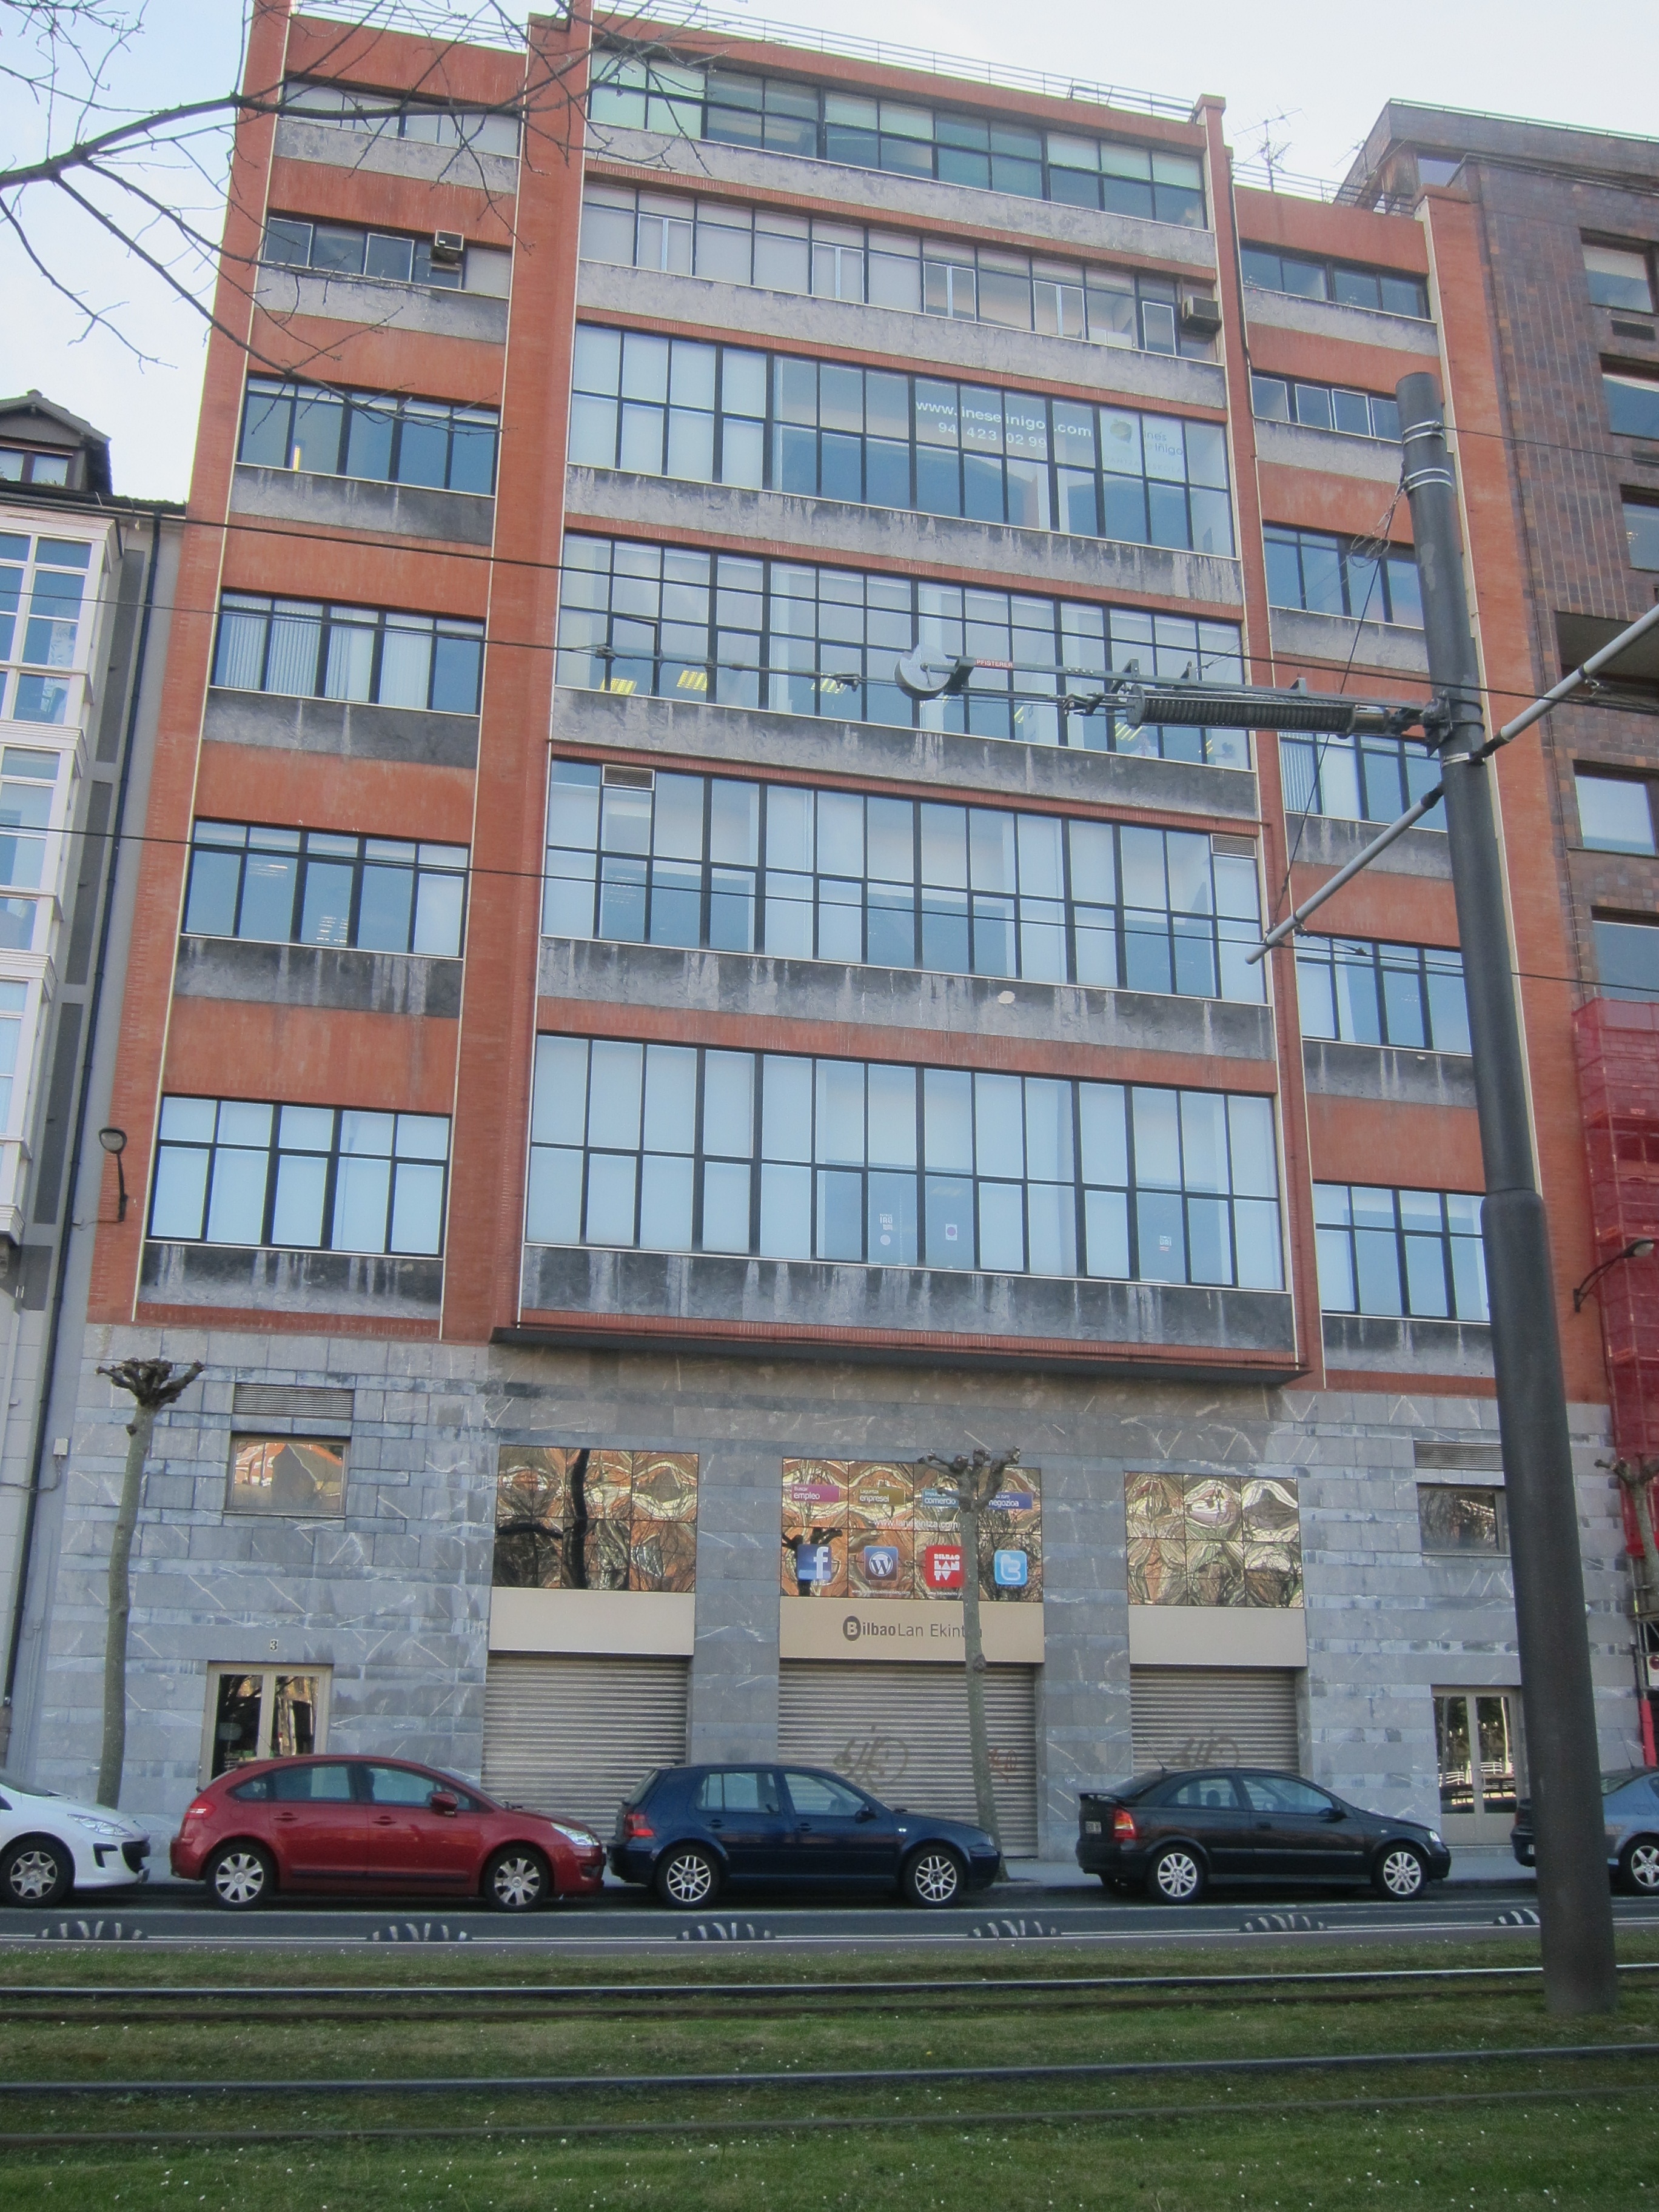 Mondragon Unibertsitatea abrirá un centro formativo en las instalaciones de Bilbao Lan Ekintza